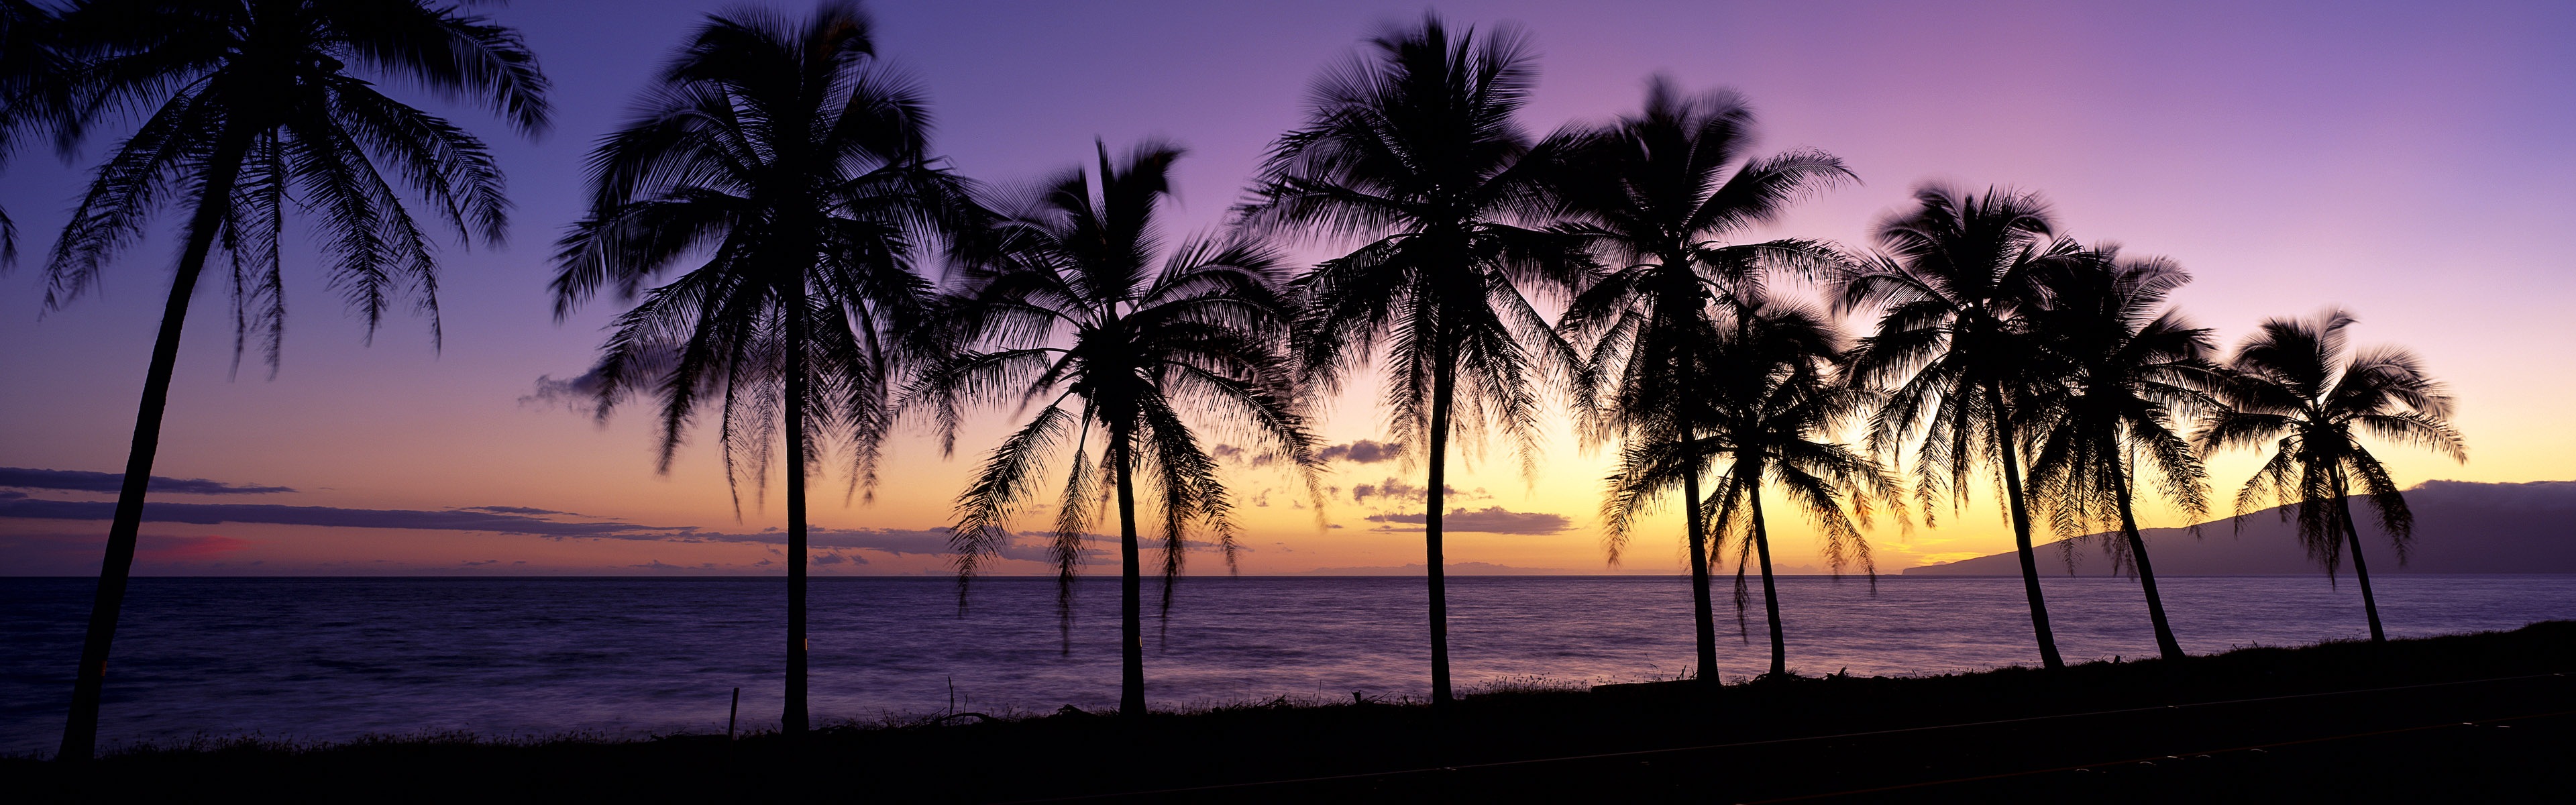 Schöner Strand Sonnenuntergang, Windows 8 Panorama-Widescreen-Wallpaper #1 - 3840x1200